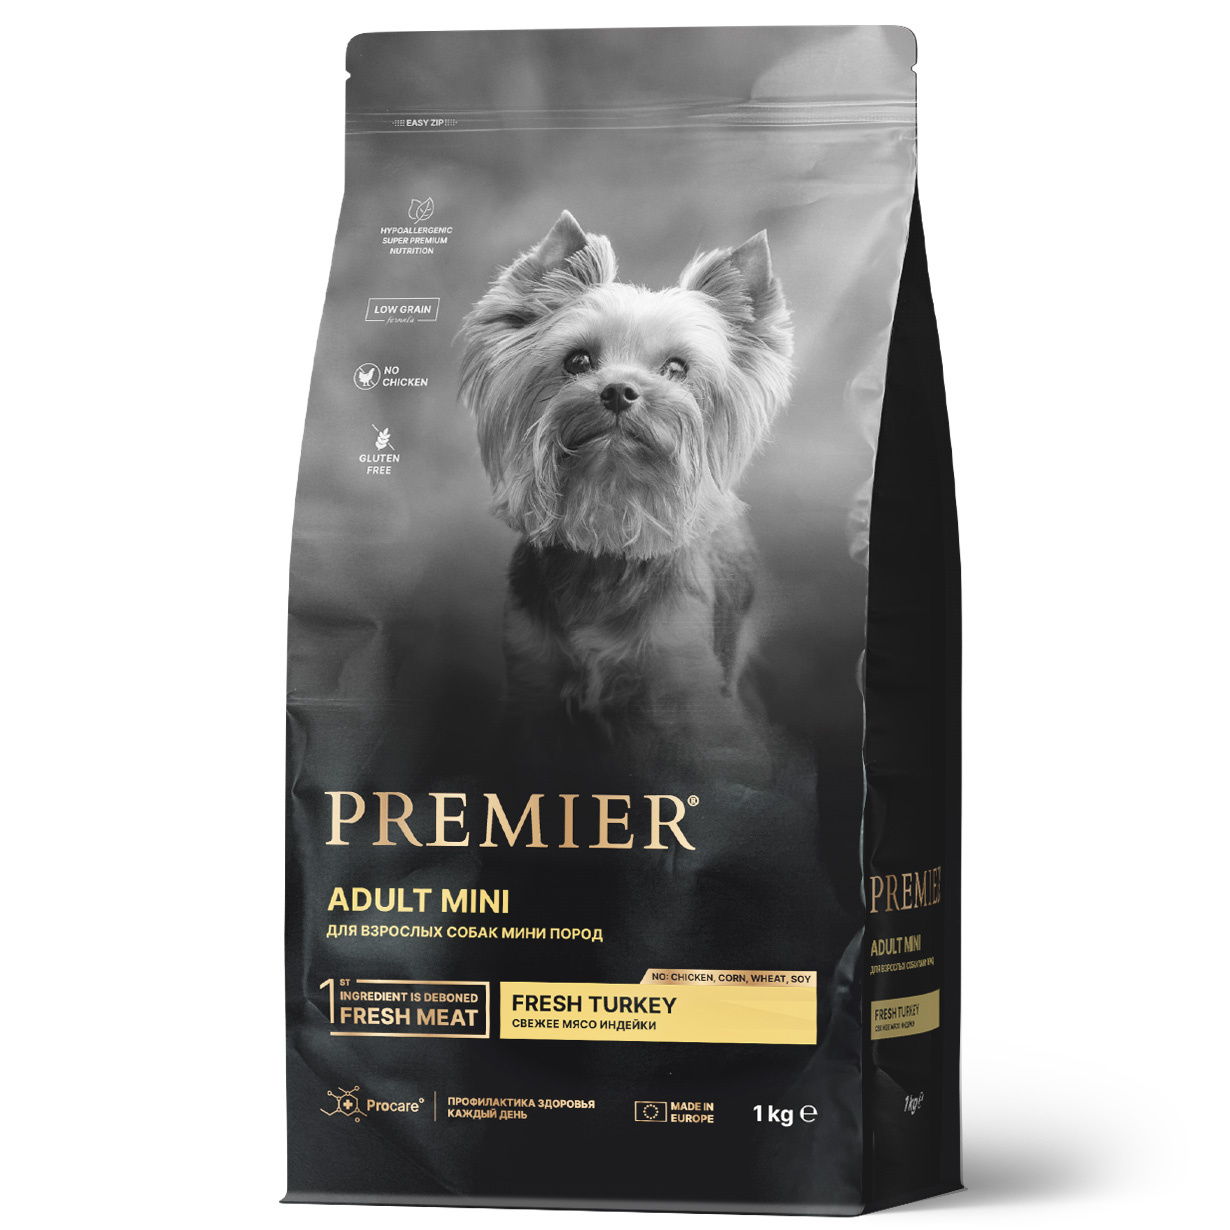 Premier Premier свежее мясо индейки для взрослых собак мелких пород (3 кг)